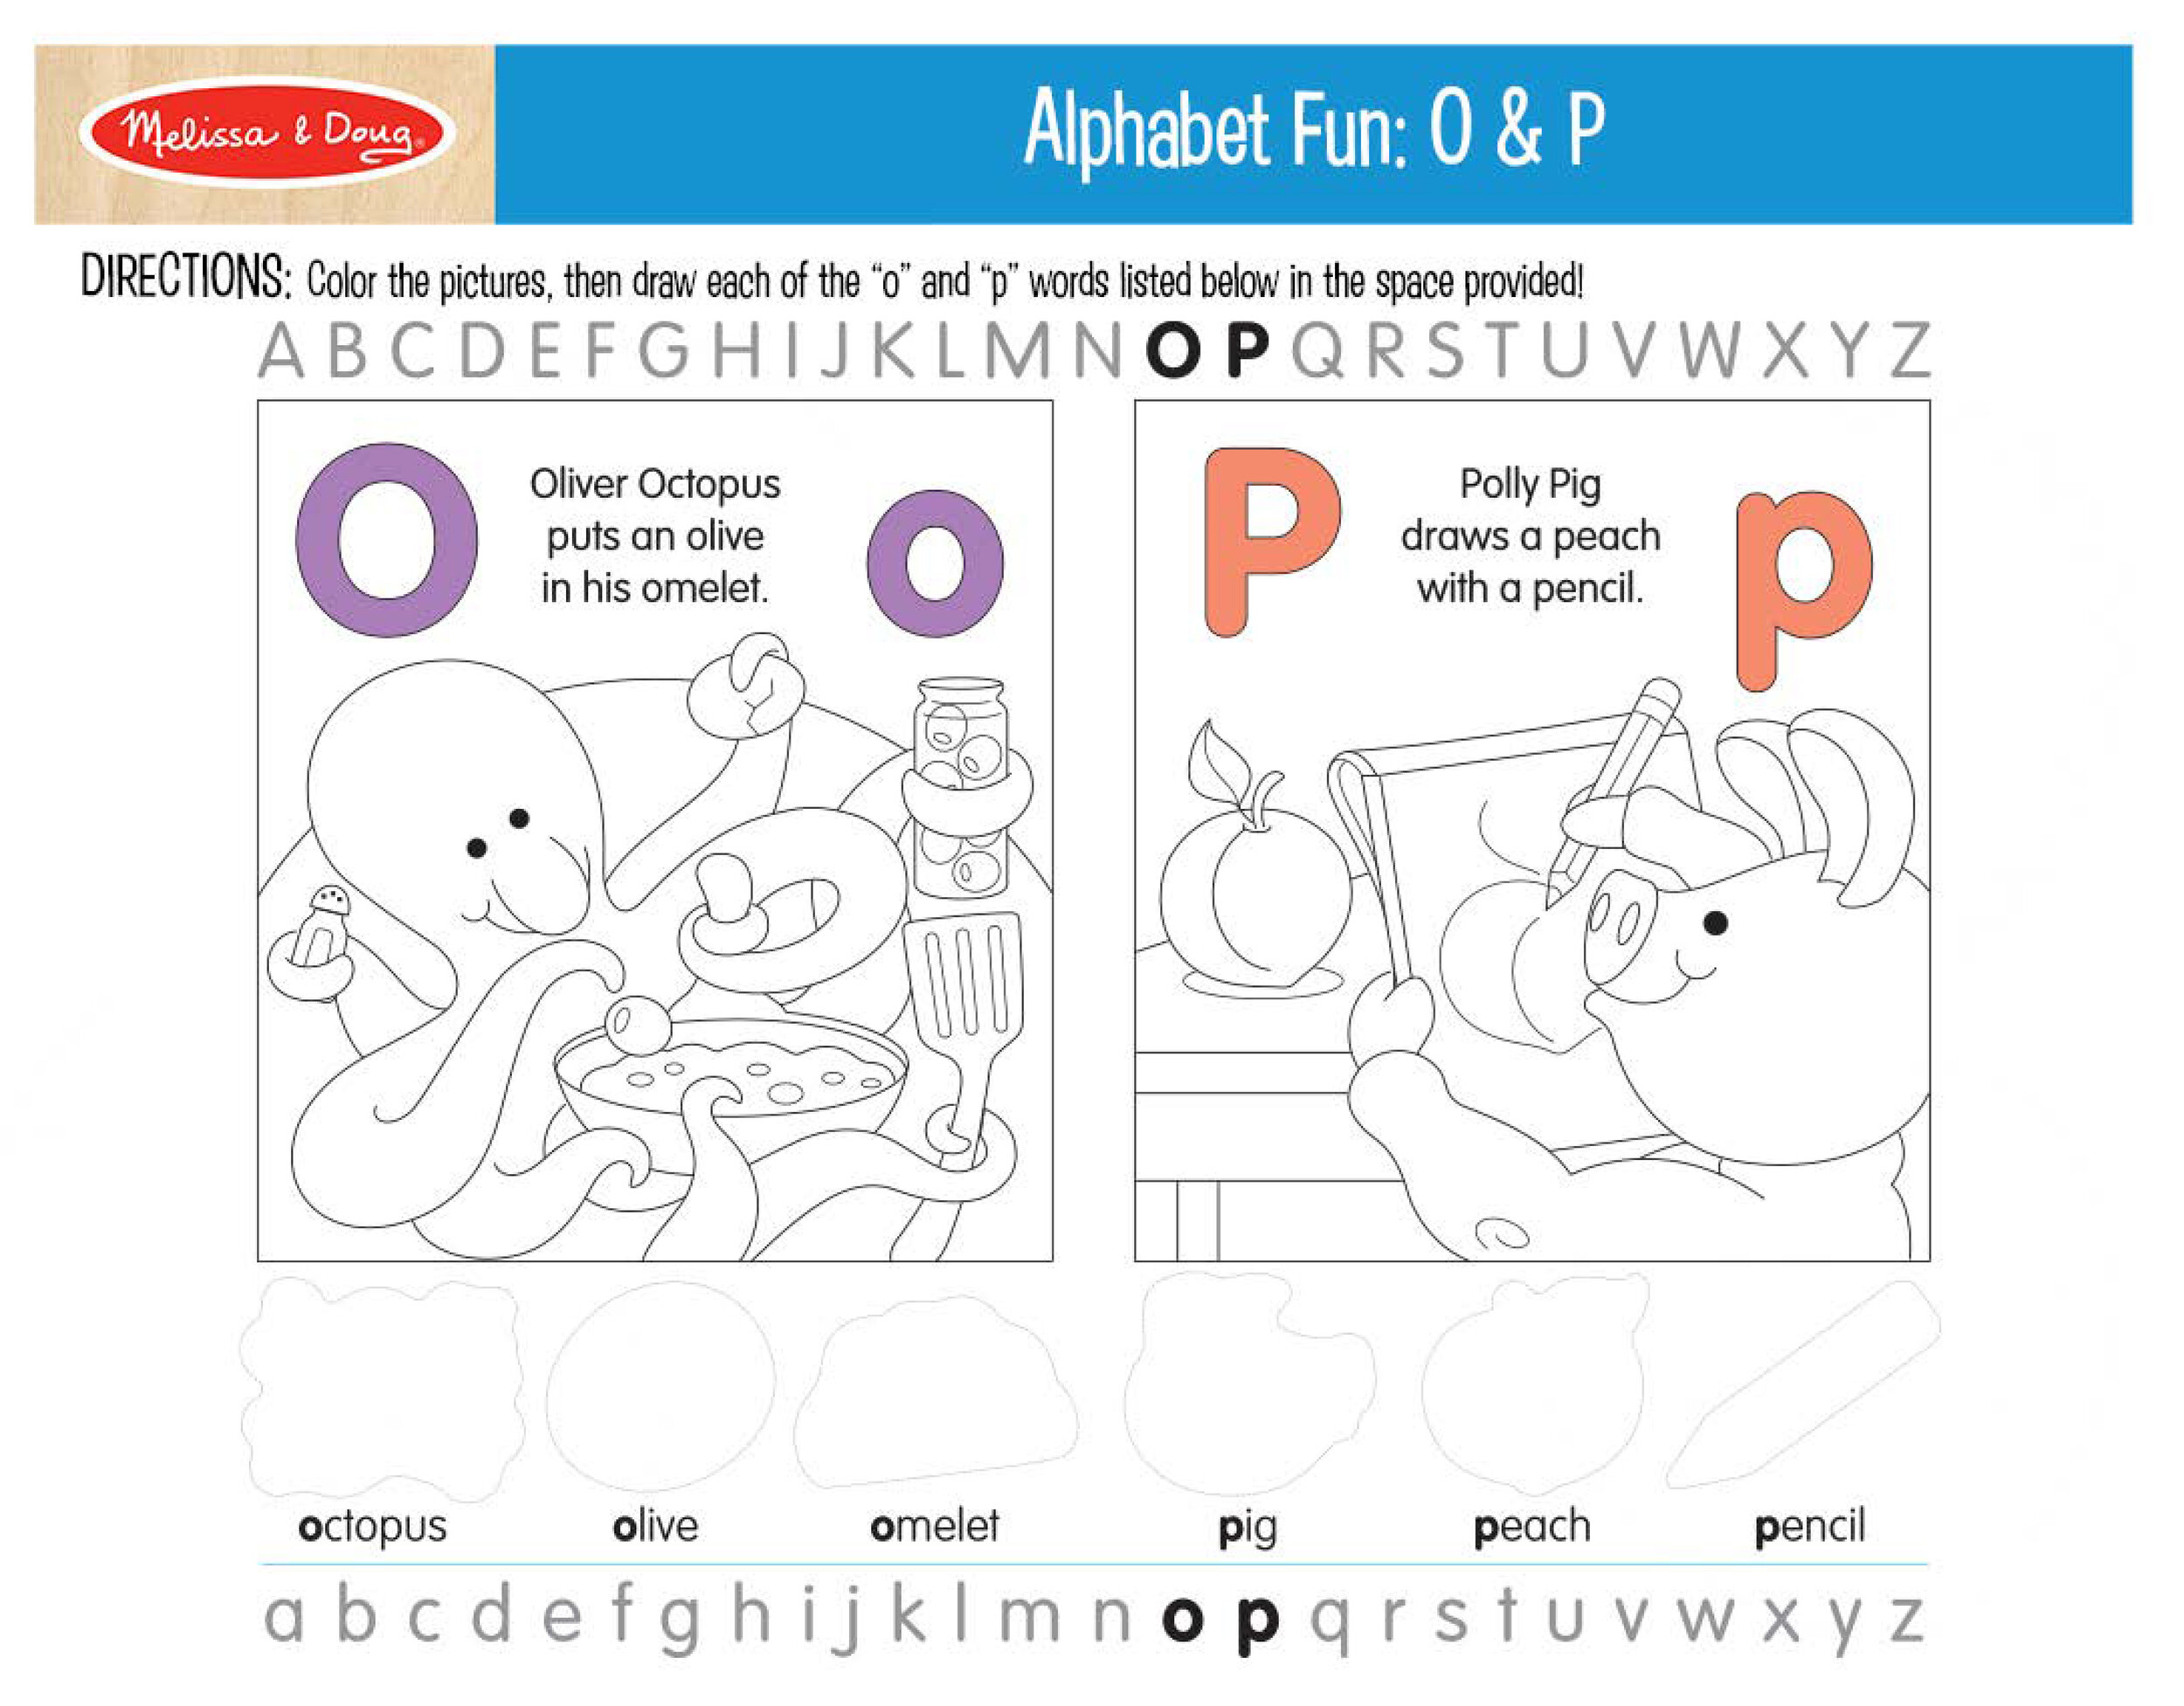 Printable_AlphabetFun-OP.jpg